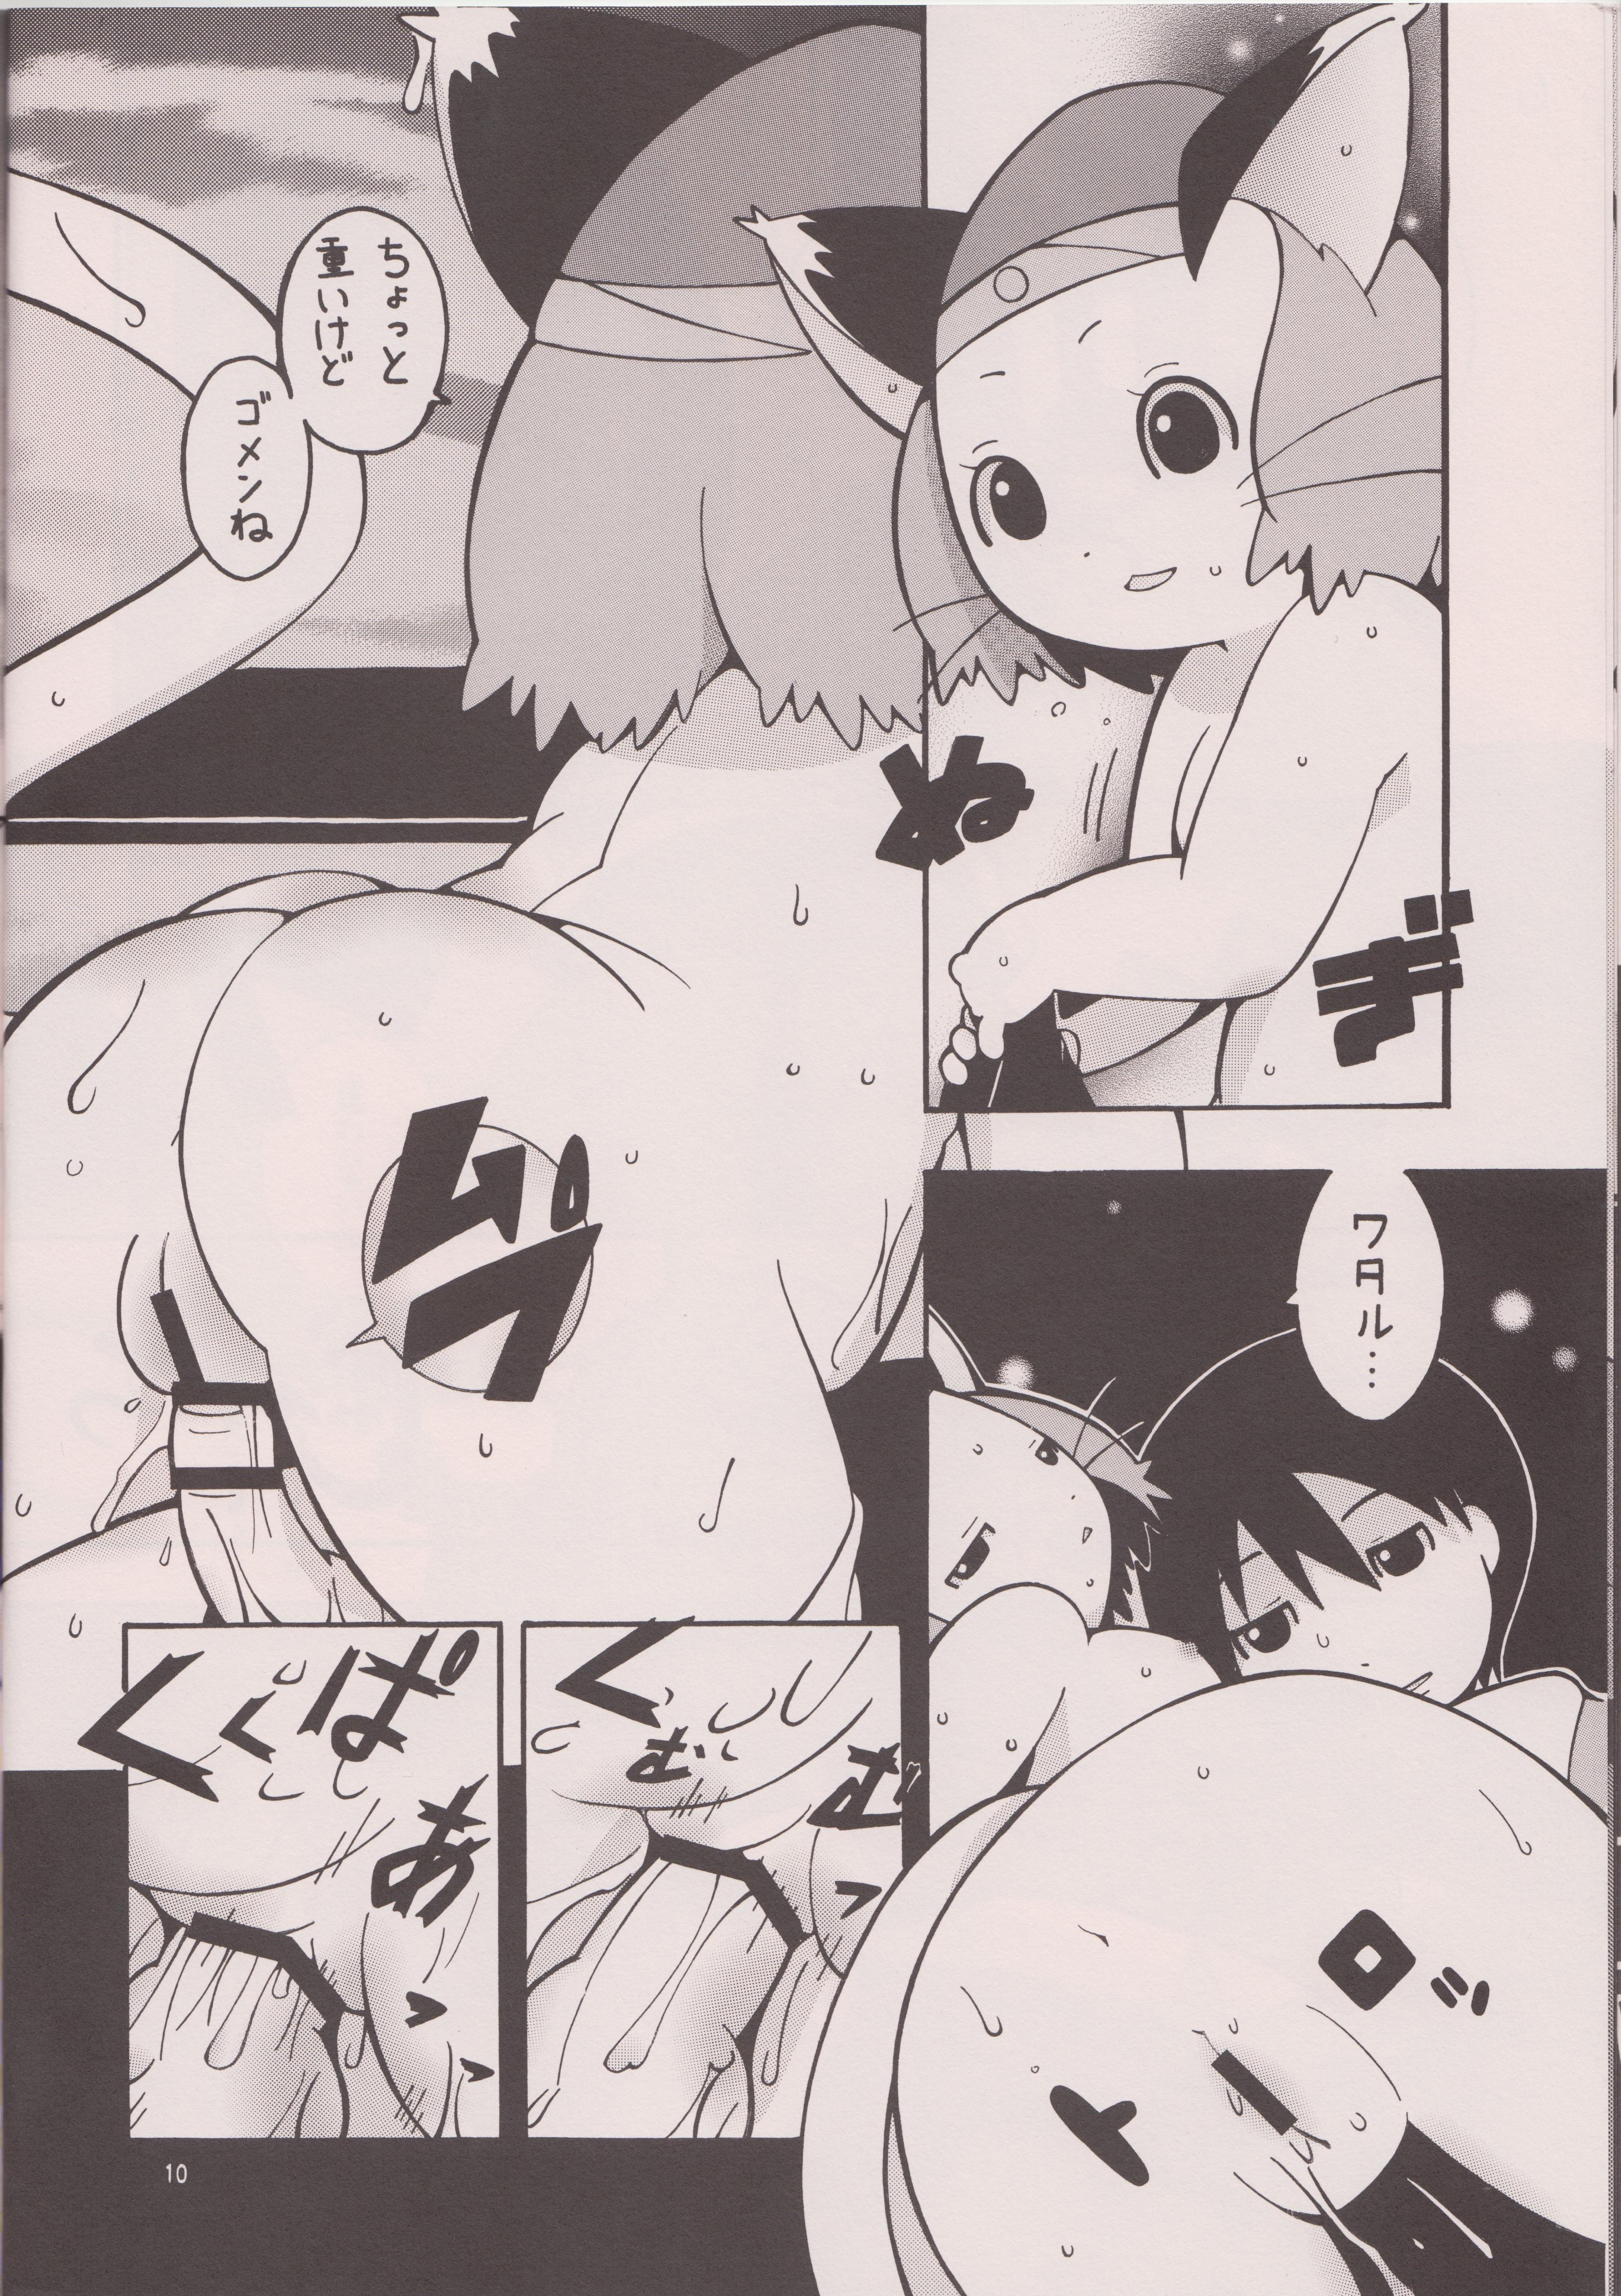 Wet Pussy Mochimochi. Mochimochimochi. - Brave story Bare - Page 9